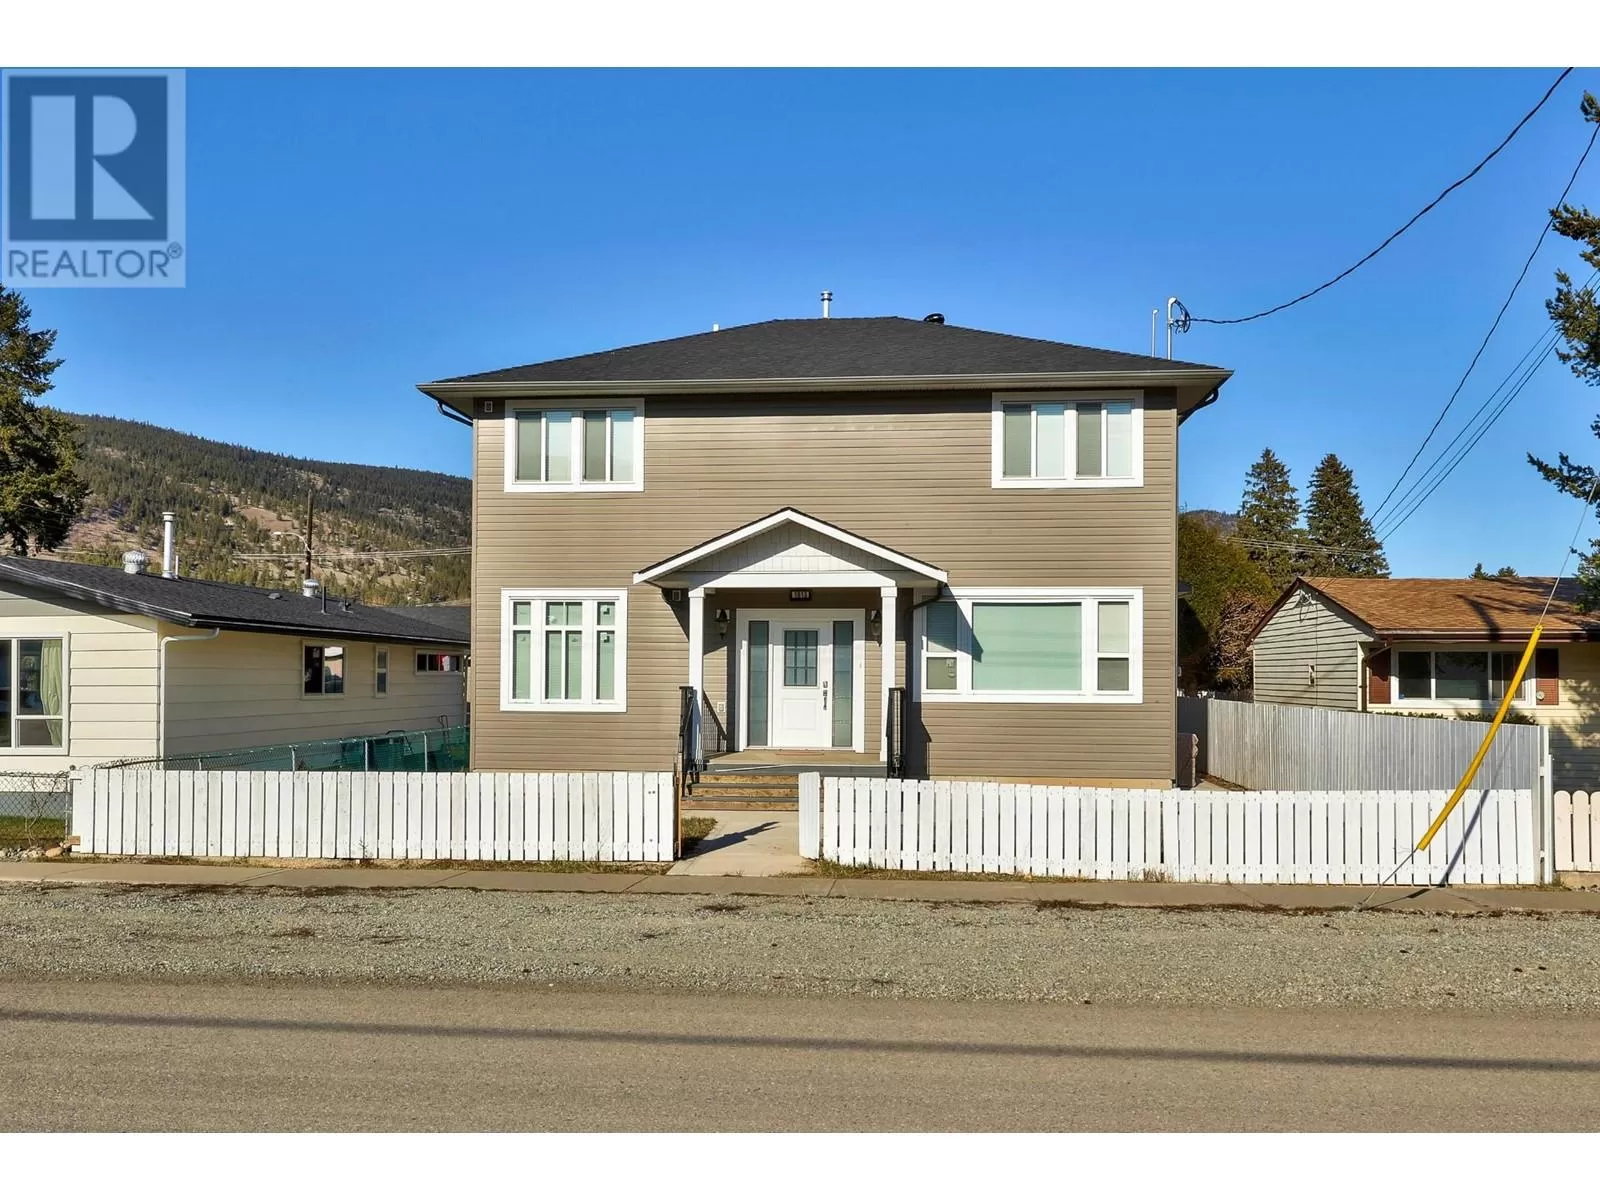 House for rent: 1613 Canford Ave, Merritt, British Columbia V1K 1R6